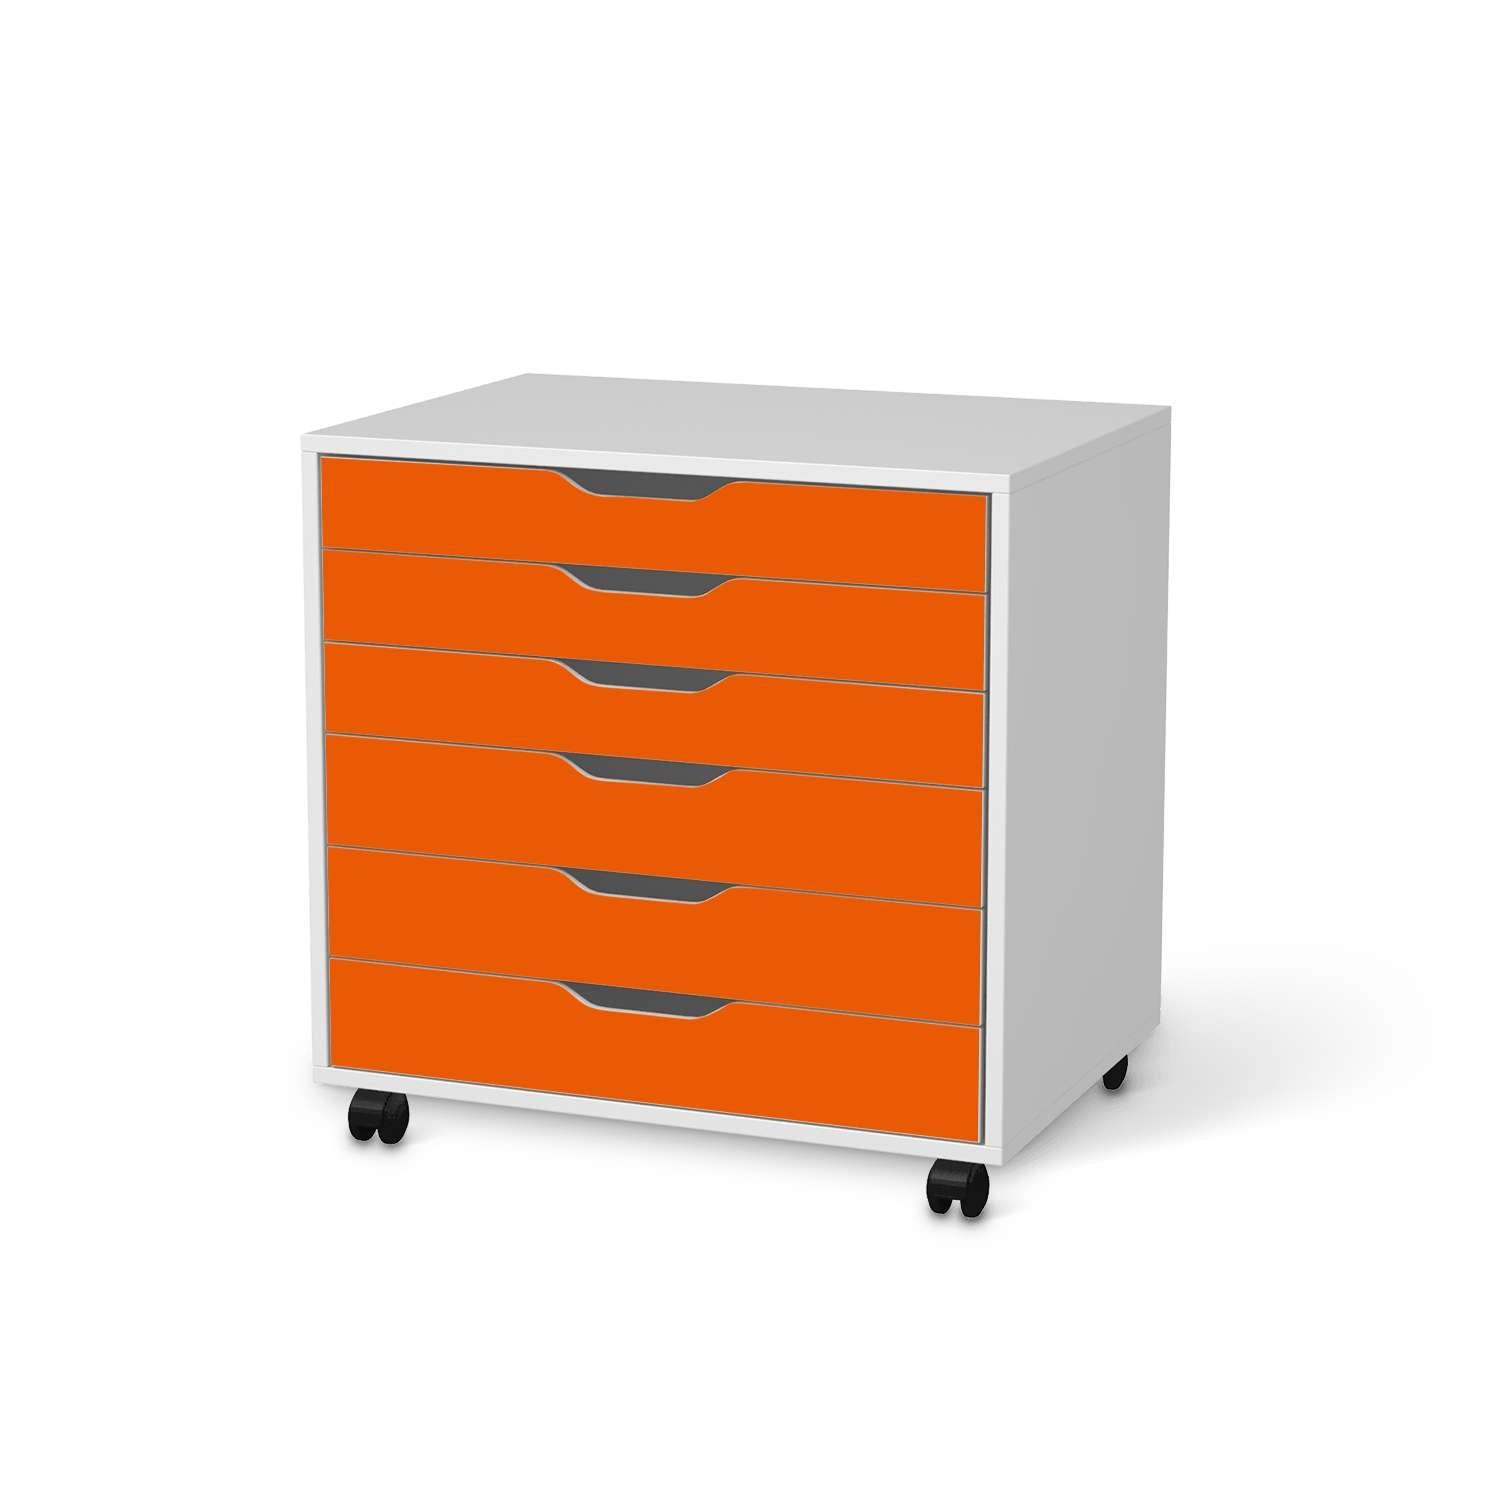 M?belfolie IKEA Alex Rollcontainer 6 Schubladen - Design: Orange Dark von creatisto